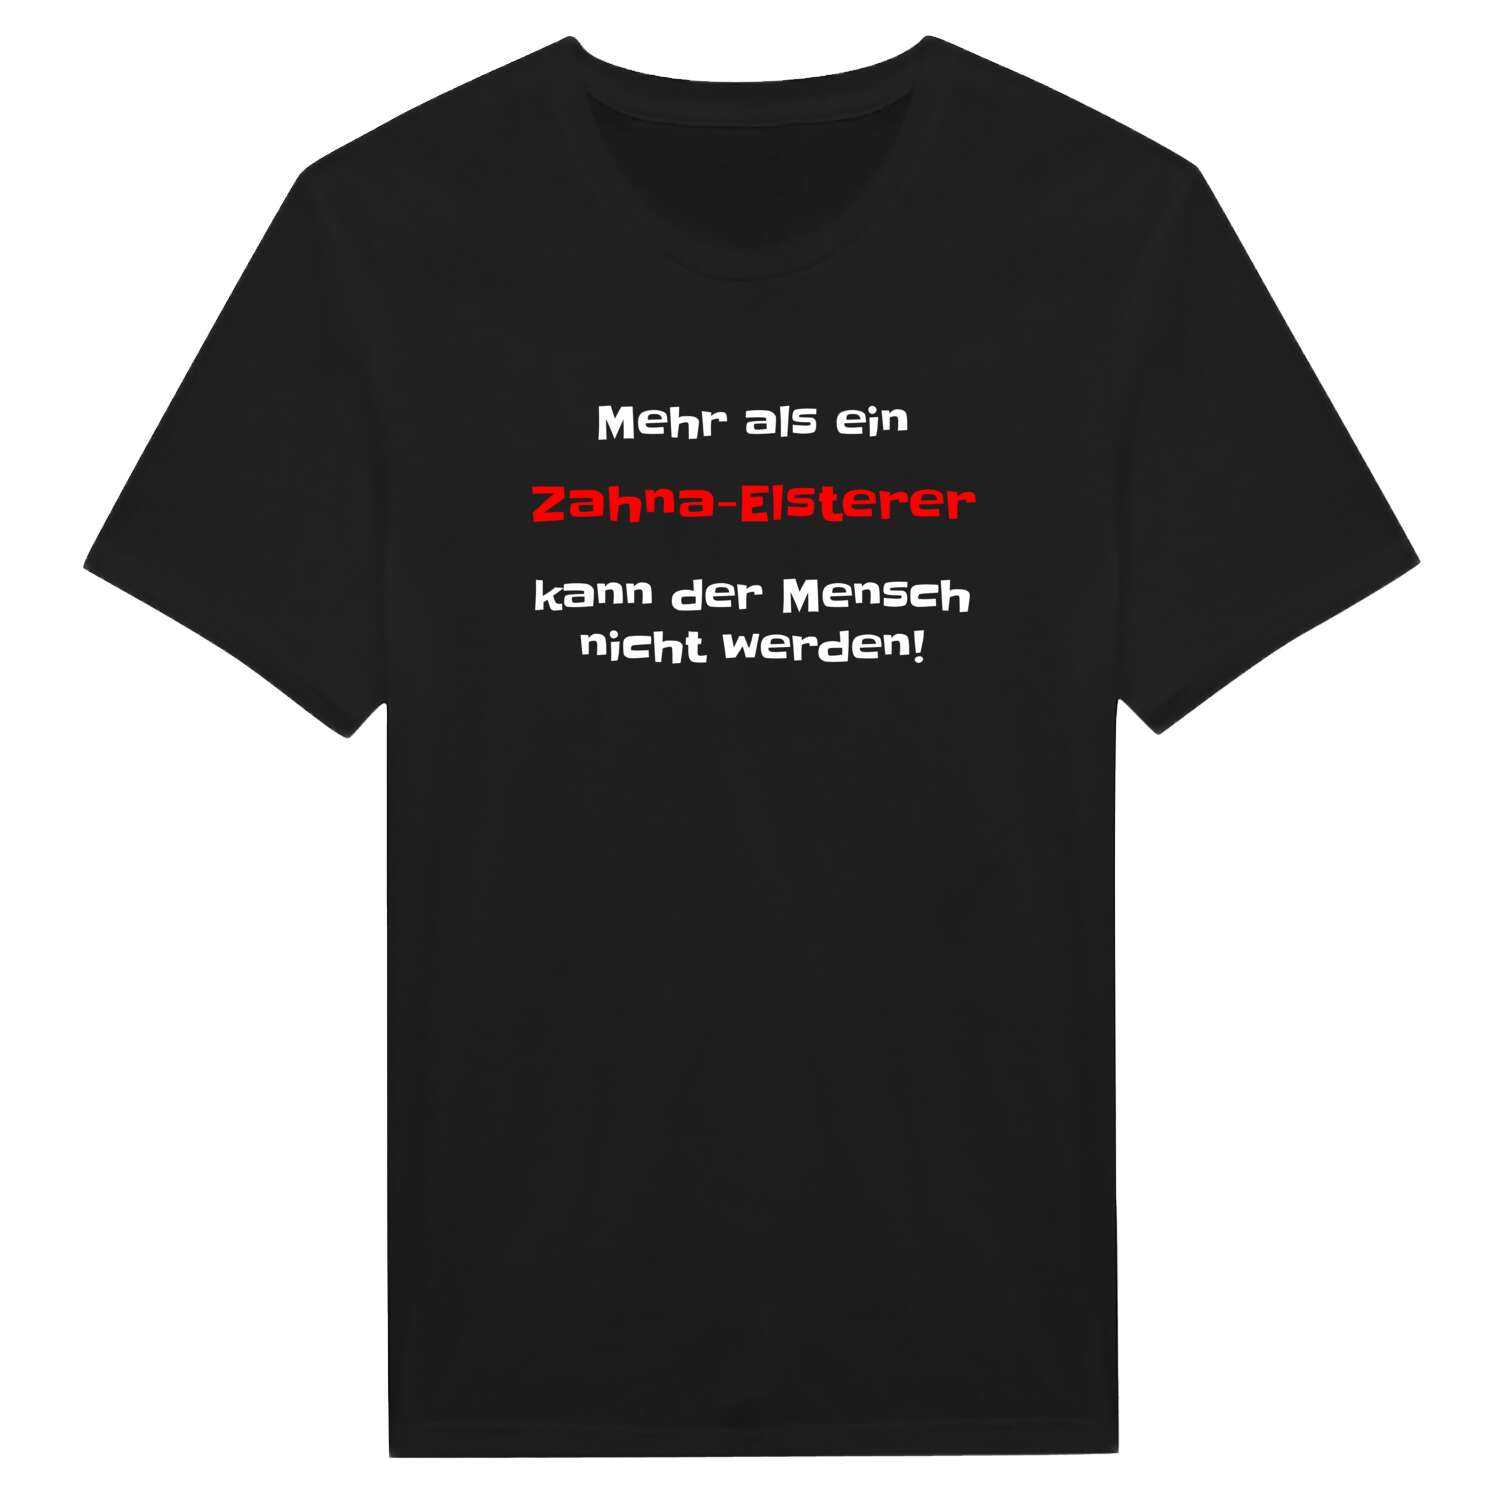 Zahna-Elster T-Shirt »Mehr als ein«